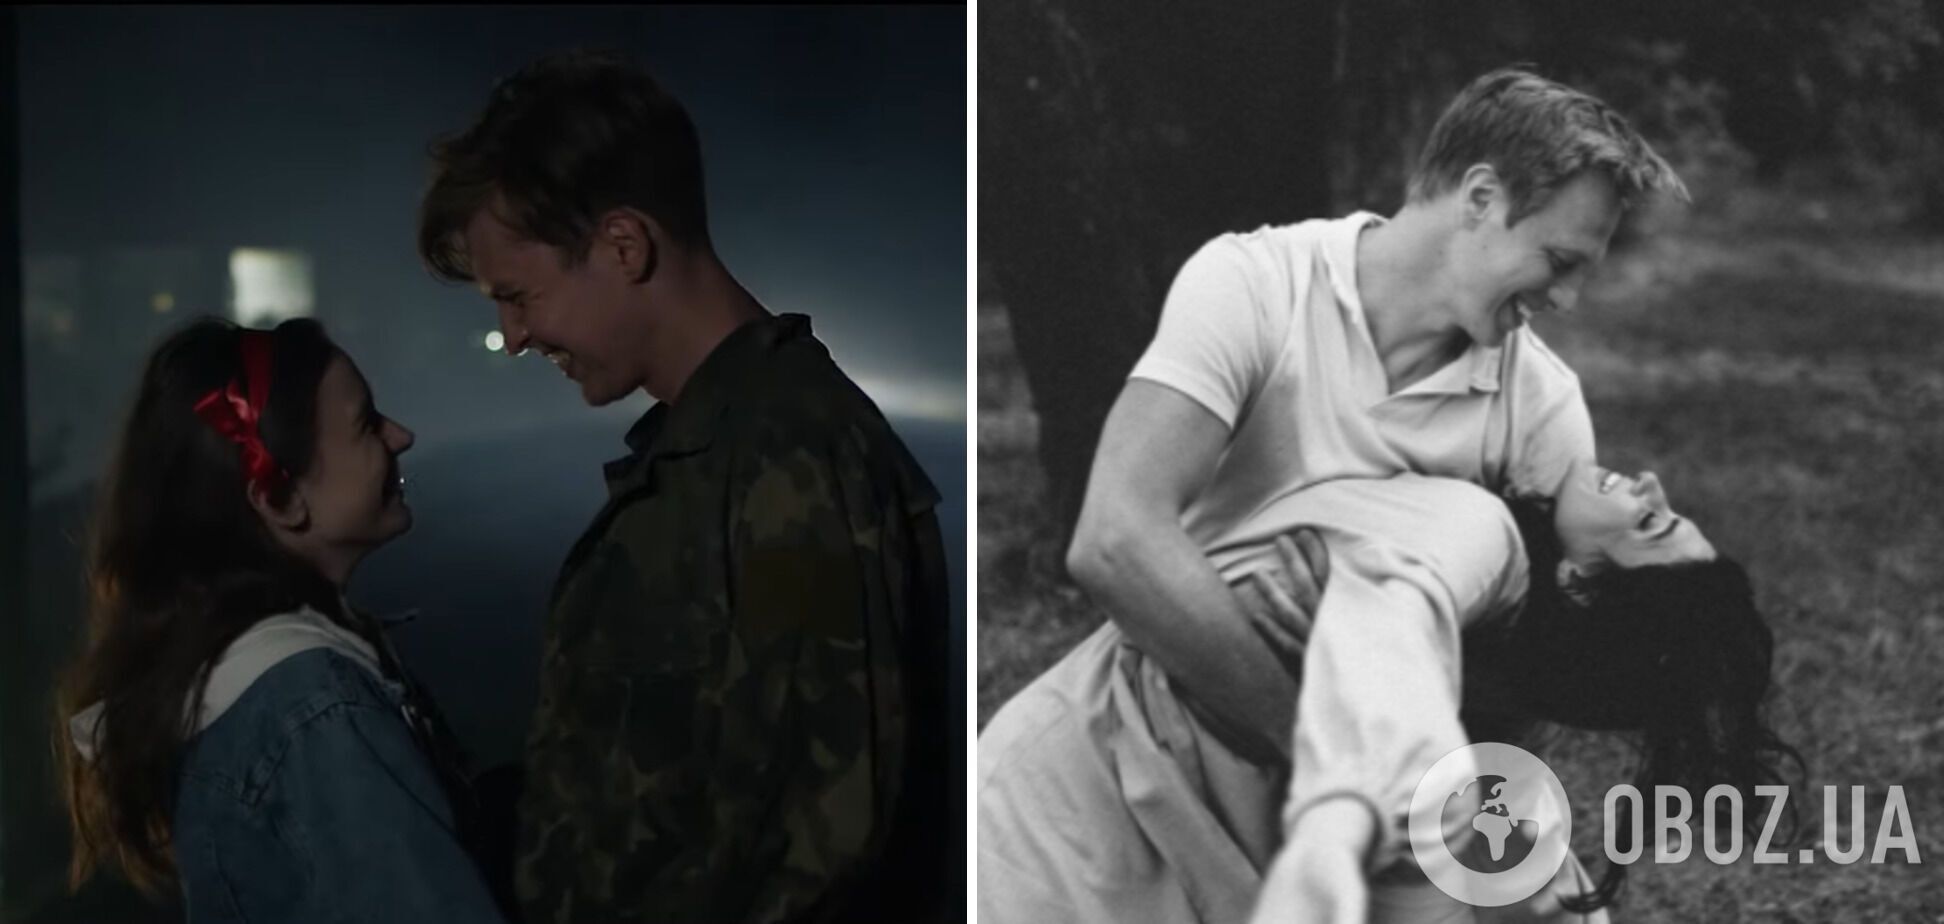 Кадр із фільму "Пригрів" та фото Валентина Томусяка